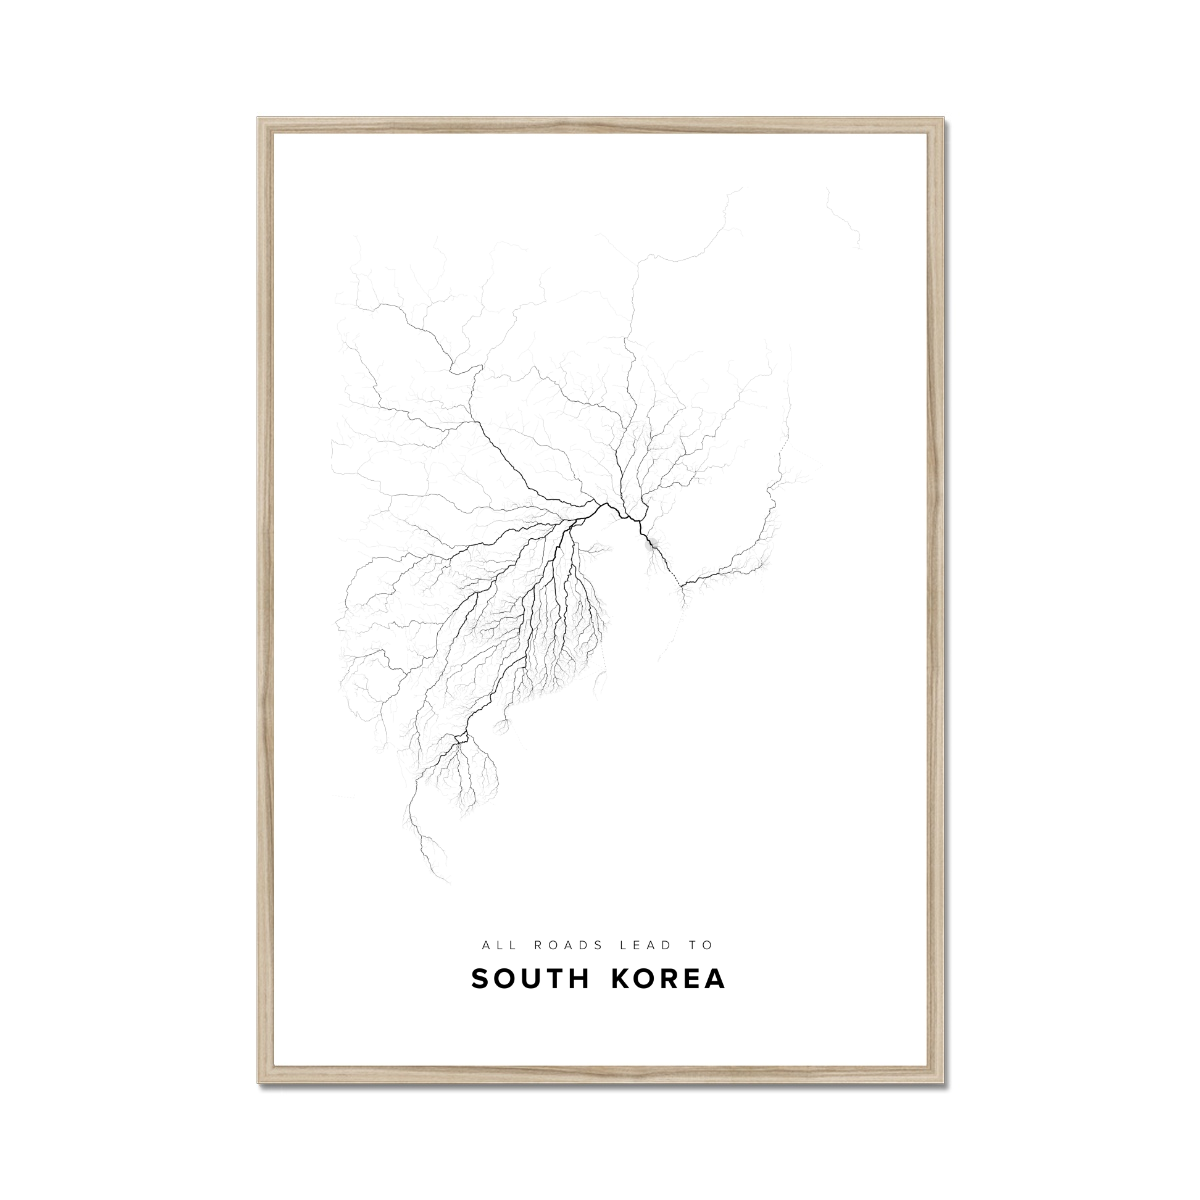 All roads lead to South Korea Fine Art Map Print